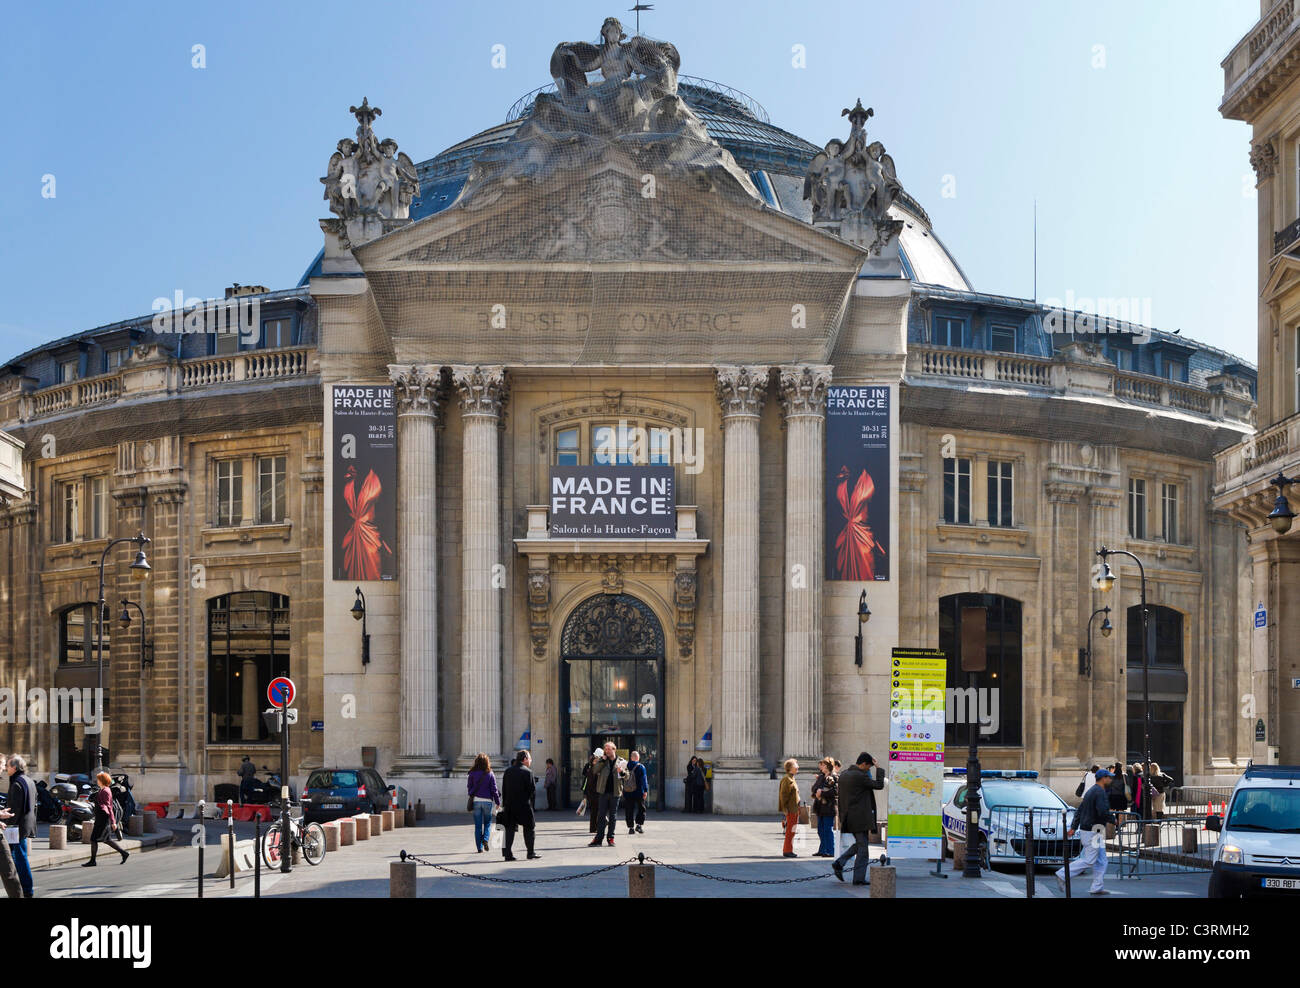 La Bourse de Commerce edificio nel 1 ° arrondissement ora occupato dalla Camera di Commercio, Rue Viarmes, Parigi, Francia Foto Stock